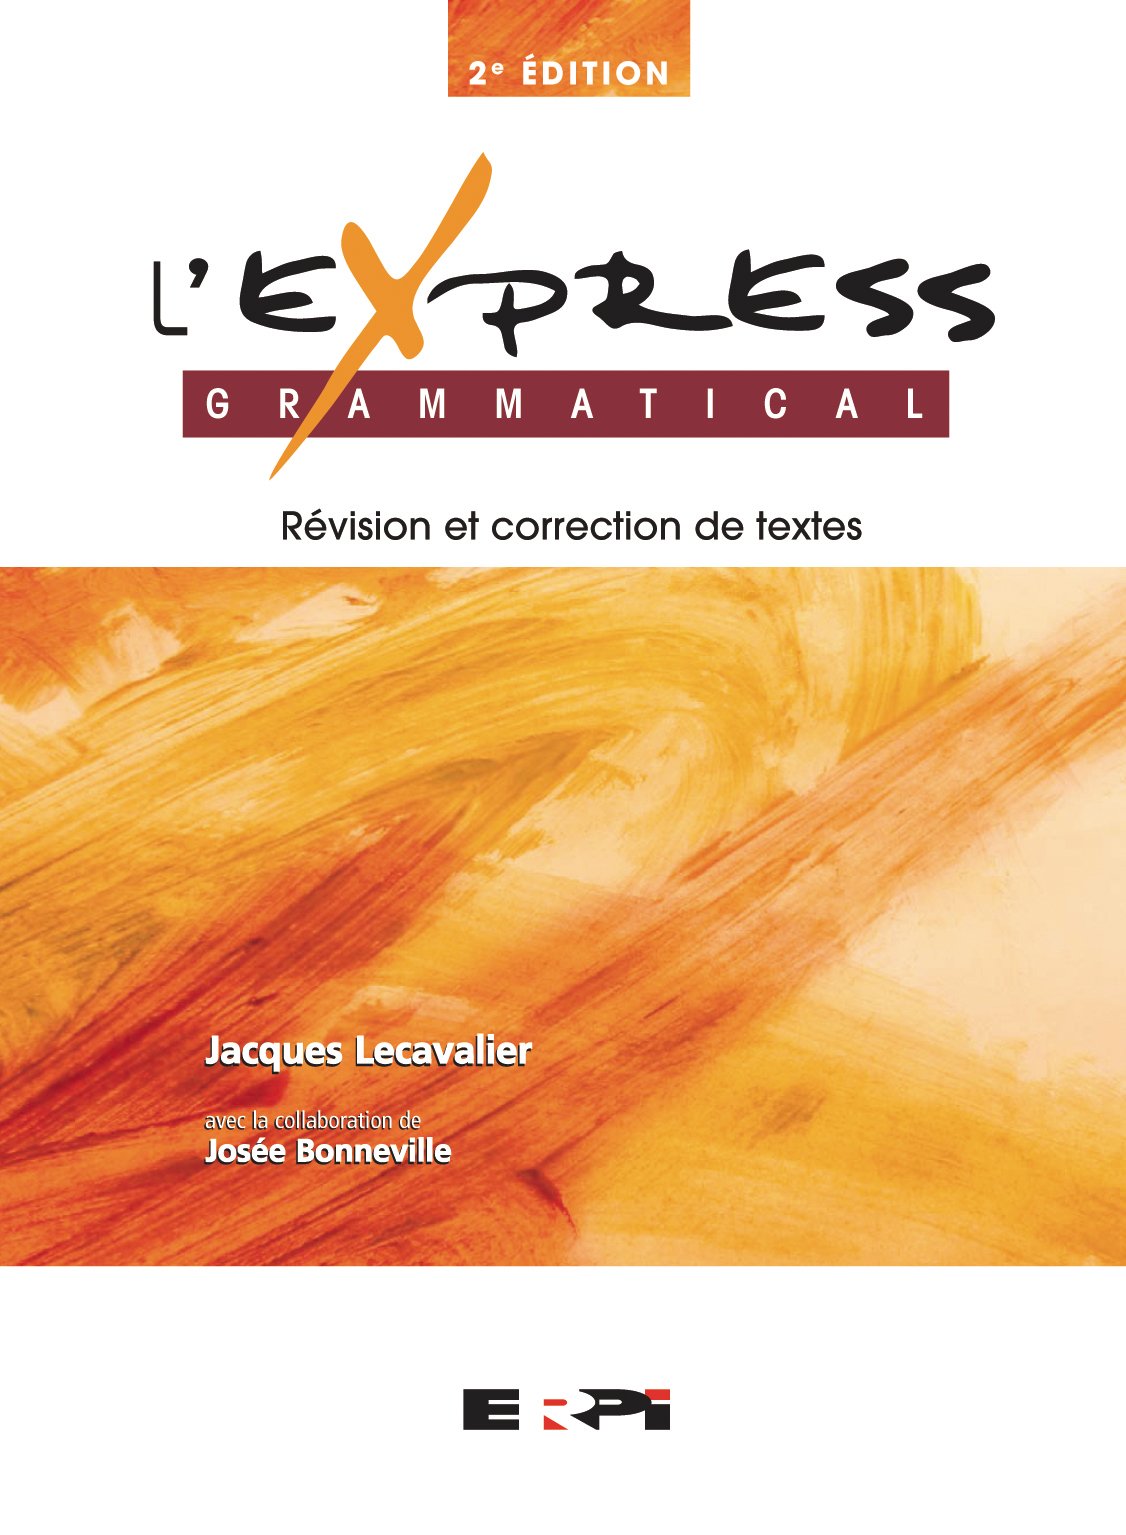 L'express Grammatical : révision et correction de textes - Jacques Lecavalier